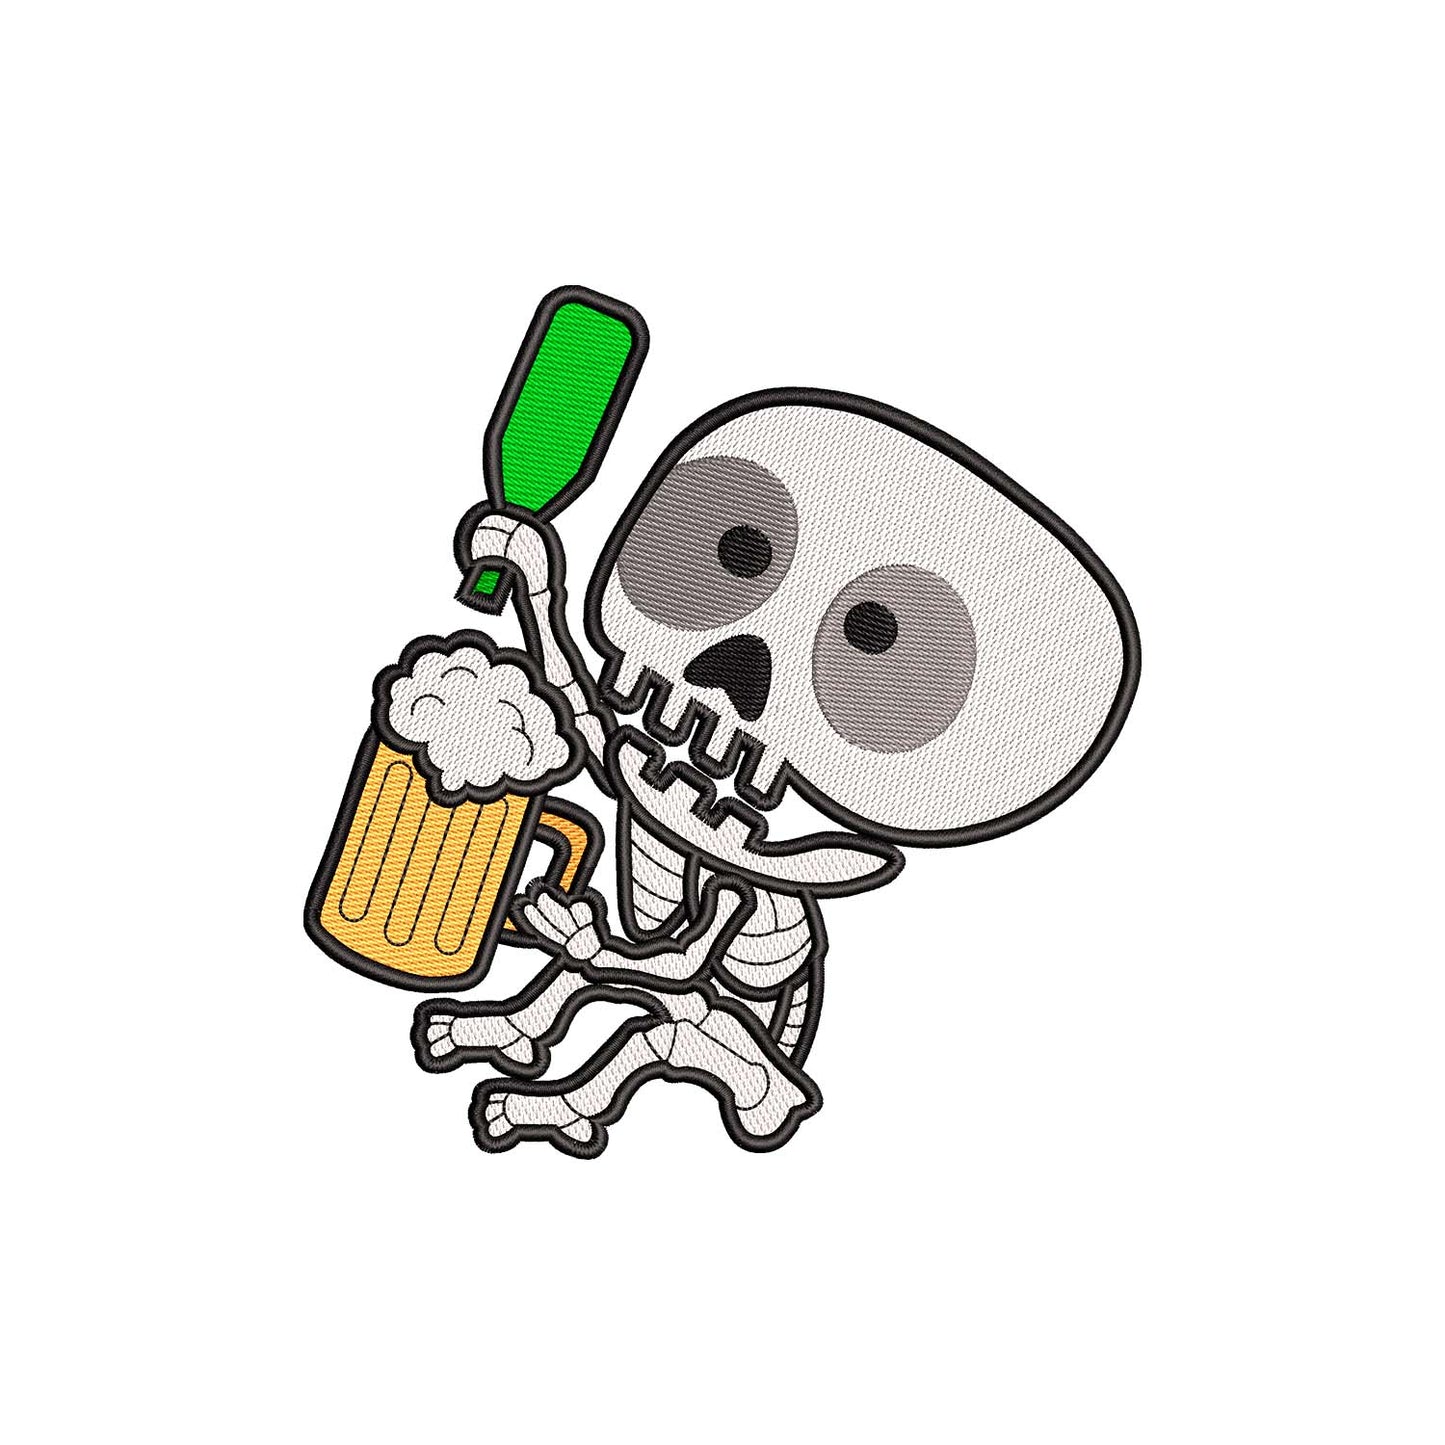 Skeleton drinks beer embroidery designs Halloween - 930060